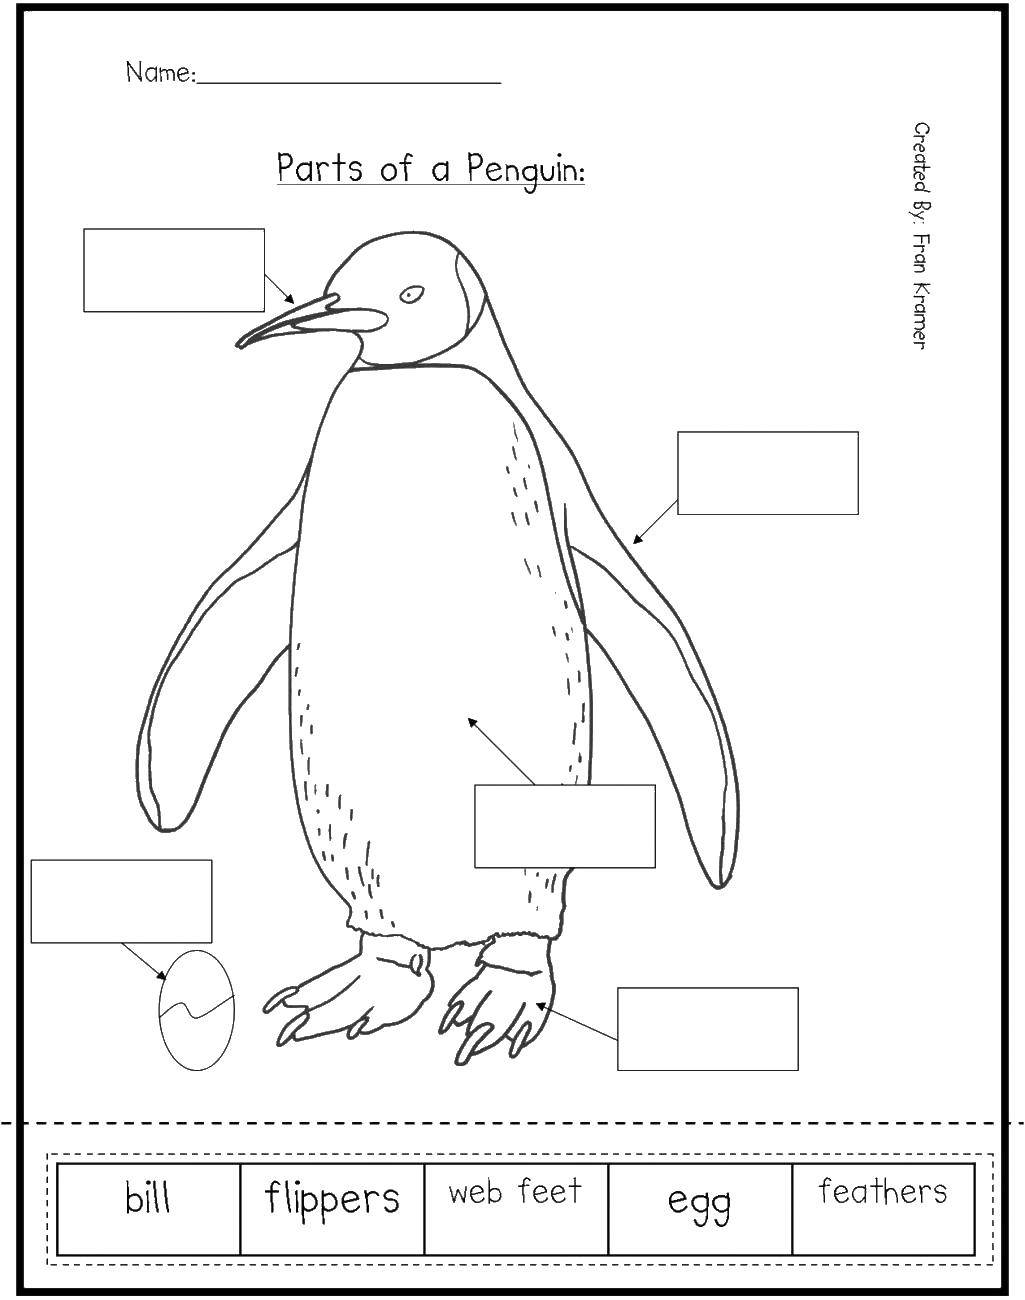 Название: Раскраска Части пингвина. Категория: Животные. Теги: части пенгвина, английский.